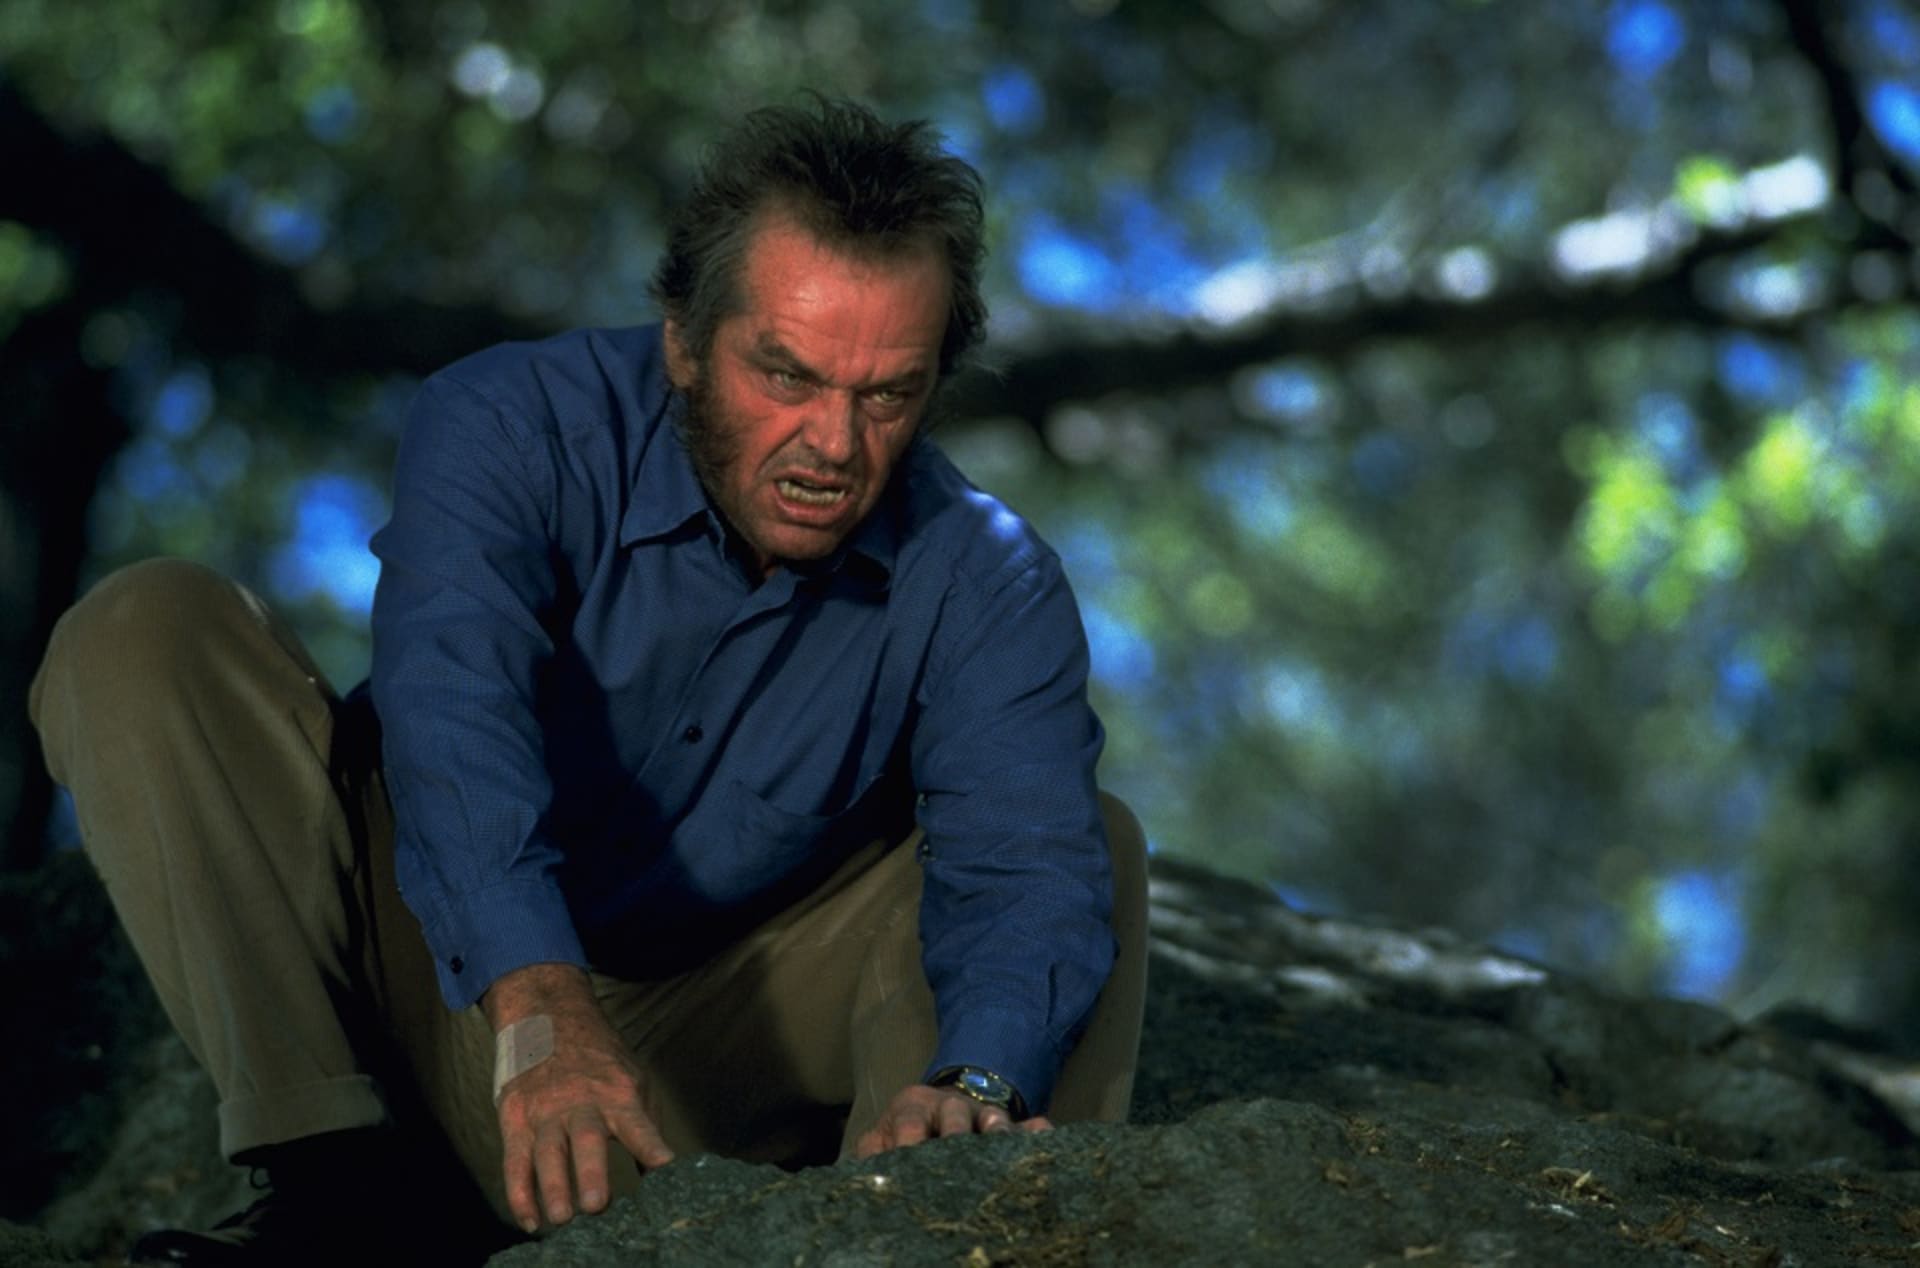 Šest nejděsivějších tváří Jacka Nicholsona – Vlk